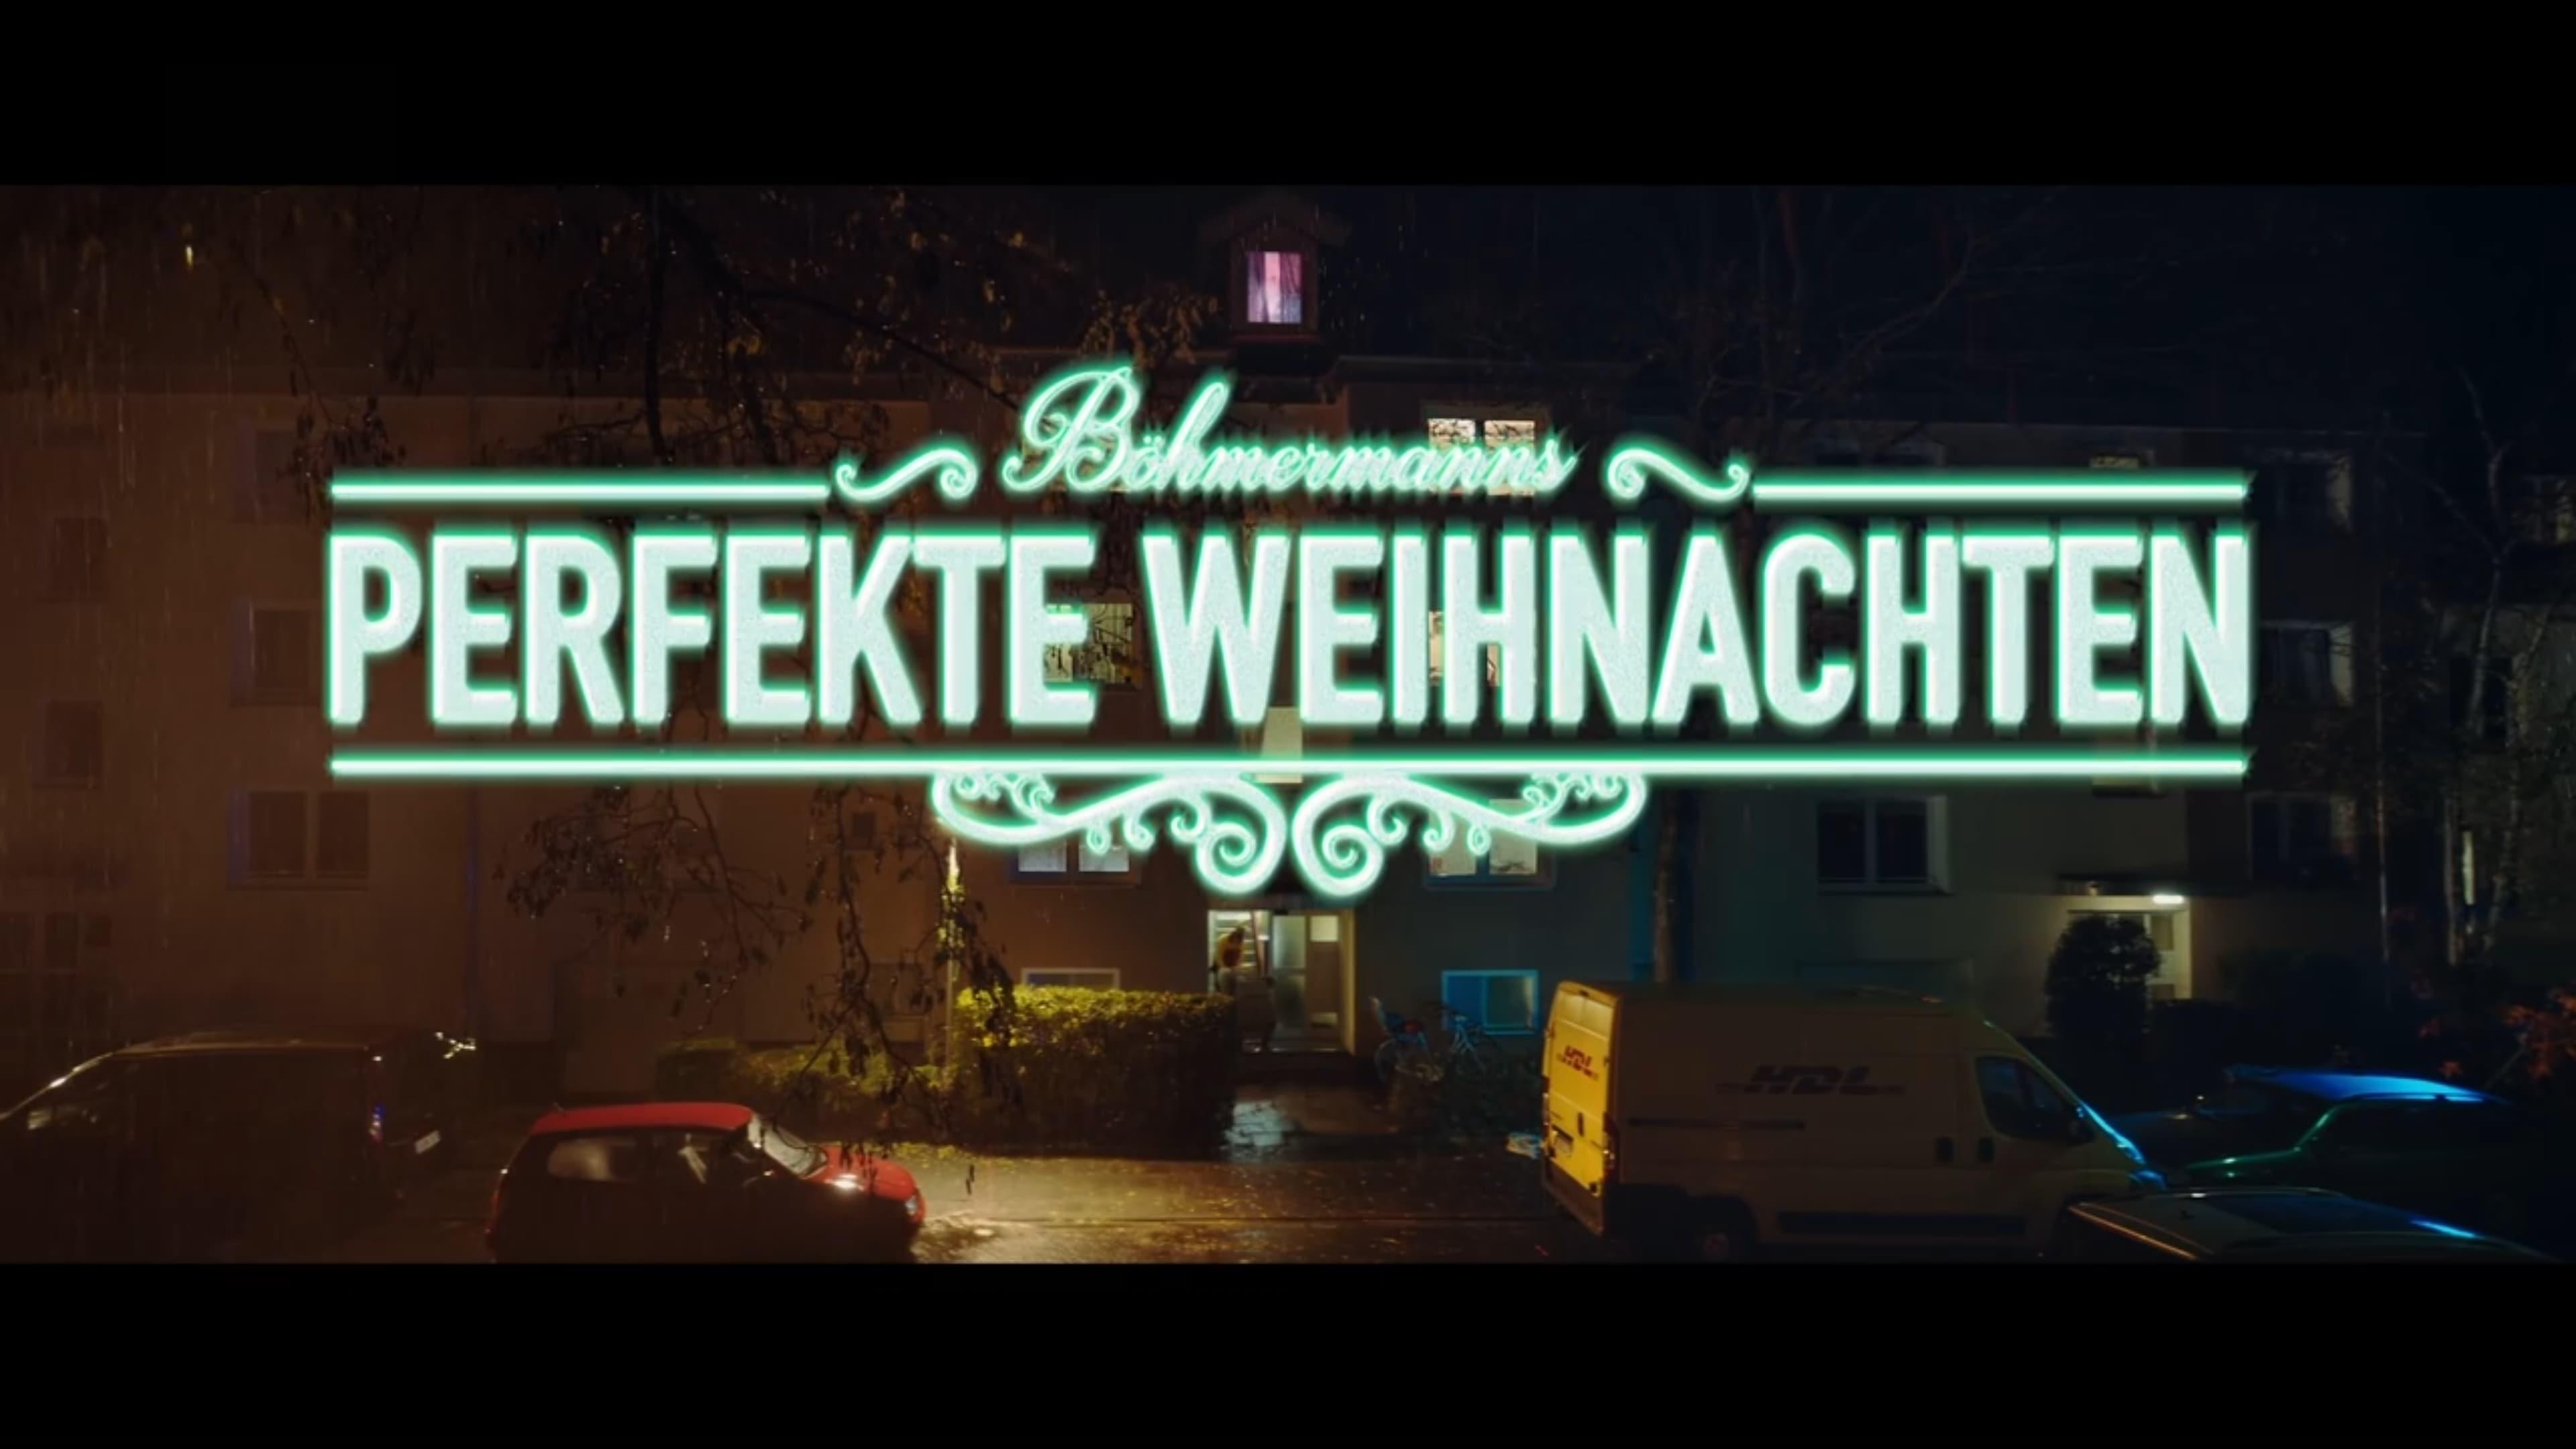 Böhmermanns perfekte Weihnachten backdrop